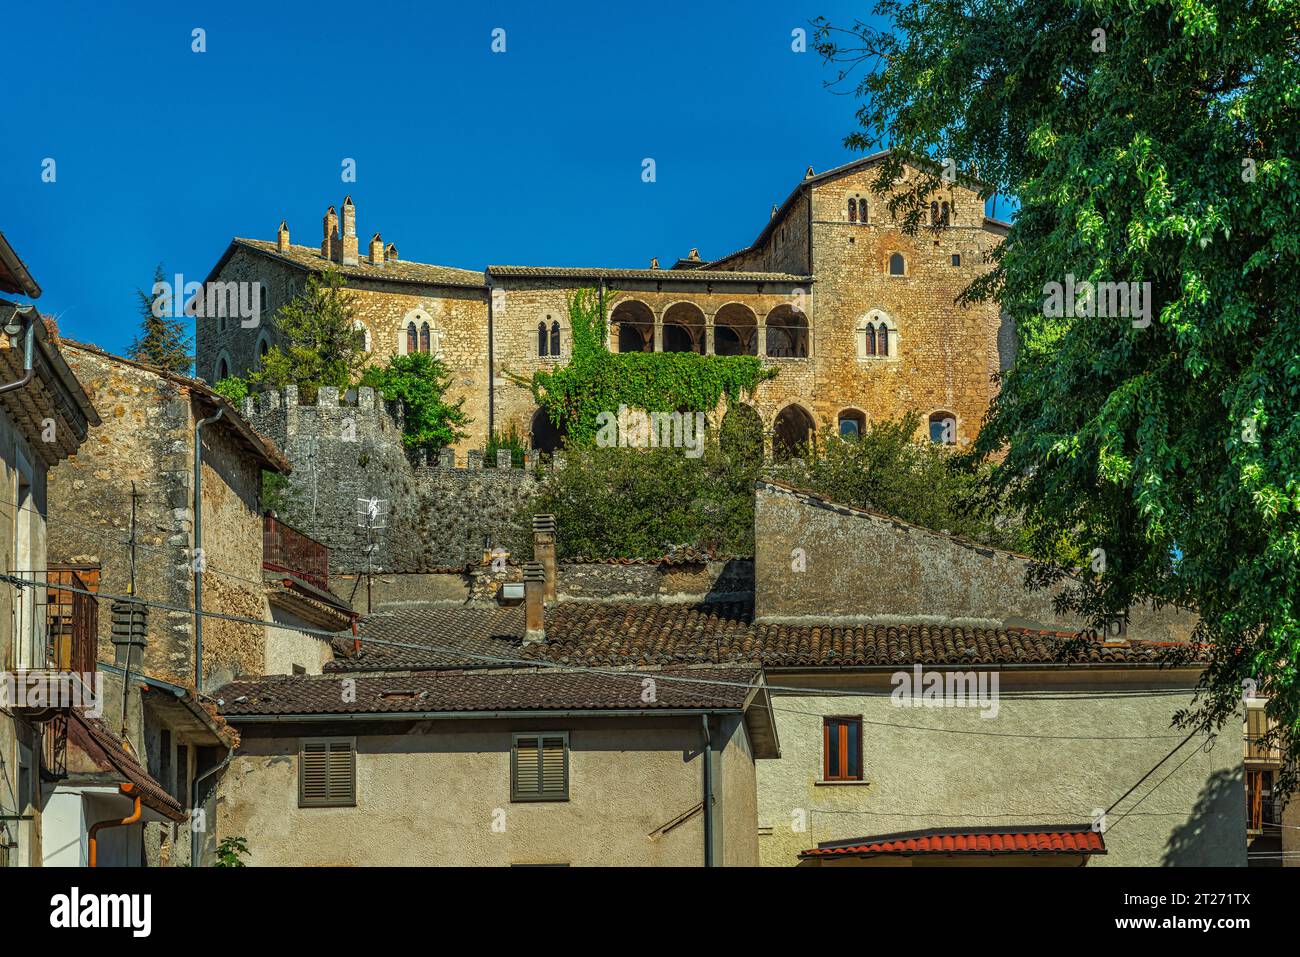 La residencia del castillo del siglo XII que perteneció a los condes de Marsi domina la ciudad medieval de Gagliano Aterno. Gagliano Aterno, Abruzos Foto de stock